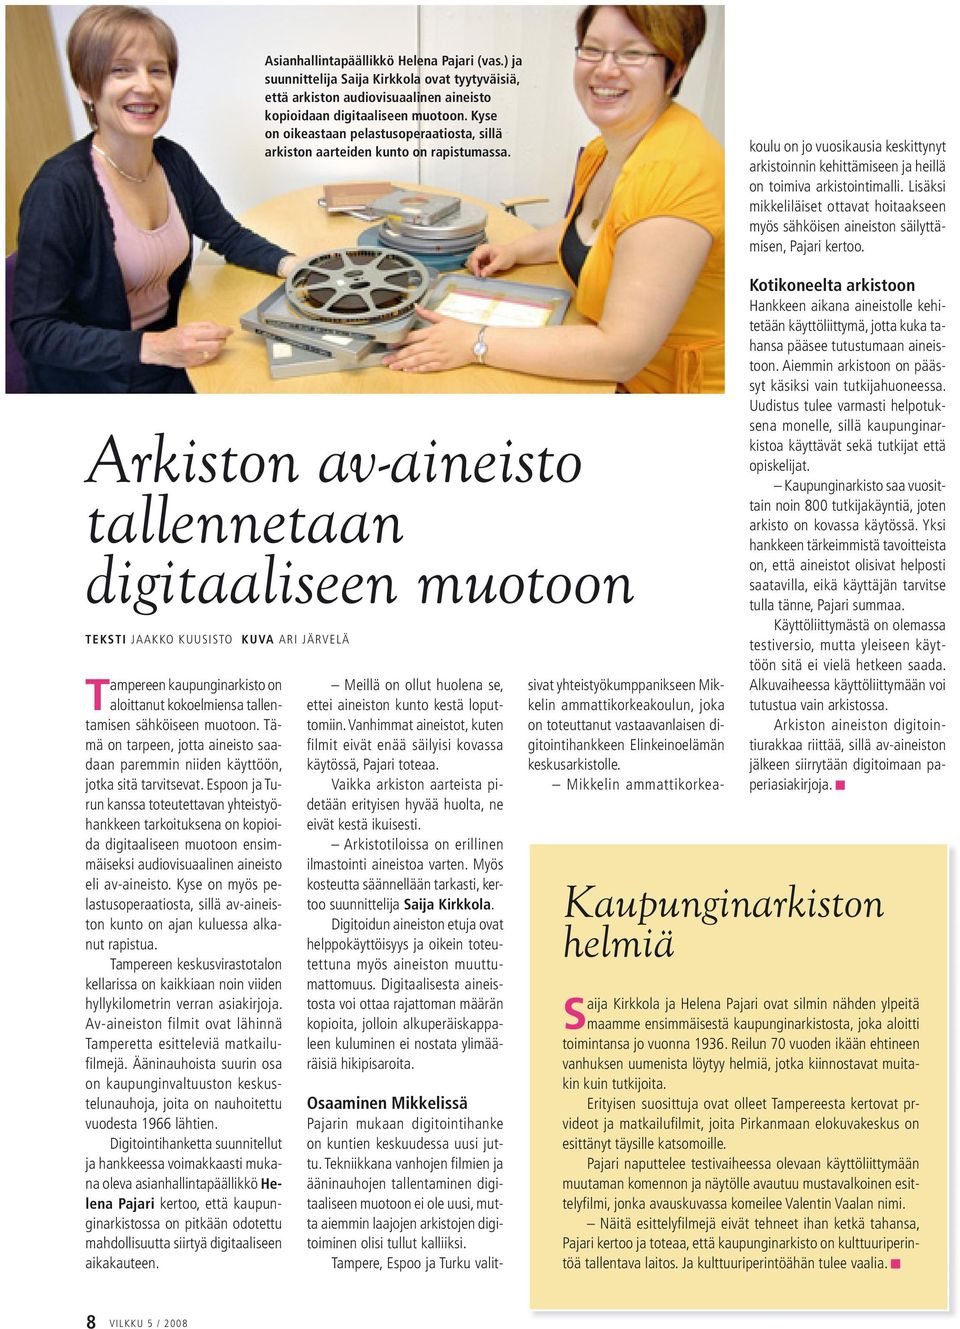 sivat yhteistyökumppanikseen Mikkelin ammattikorkeakoulun, joka on toteuttanut vastaavanlaisen digitointihankkeen Elinkeinoelämän keskusarkistolle.